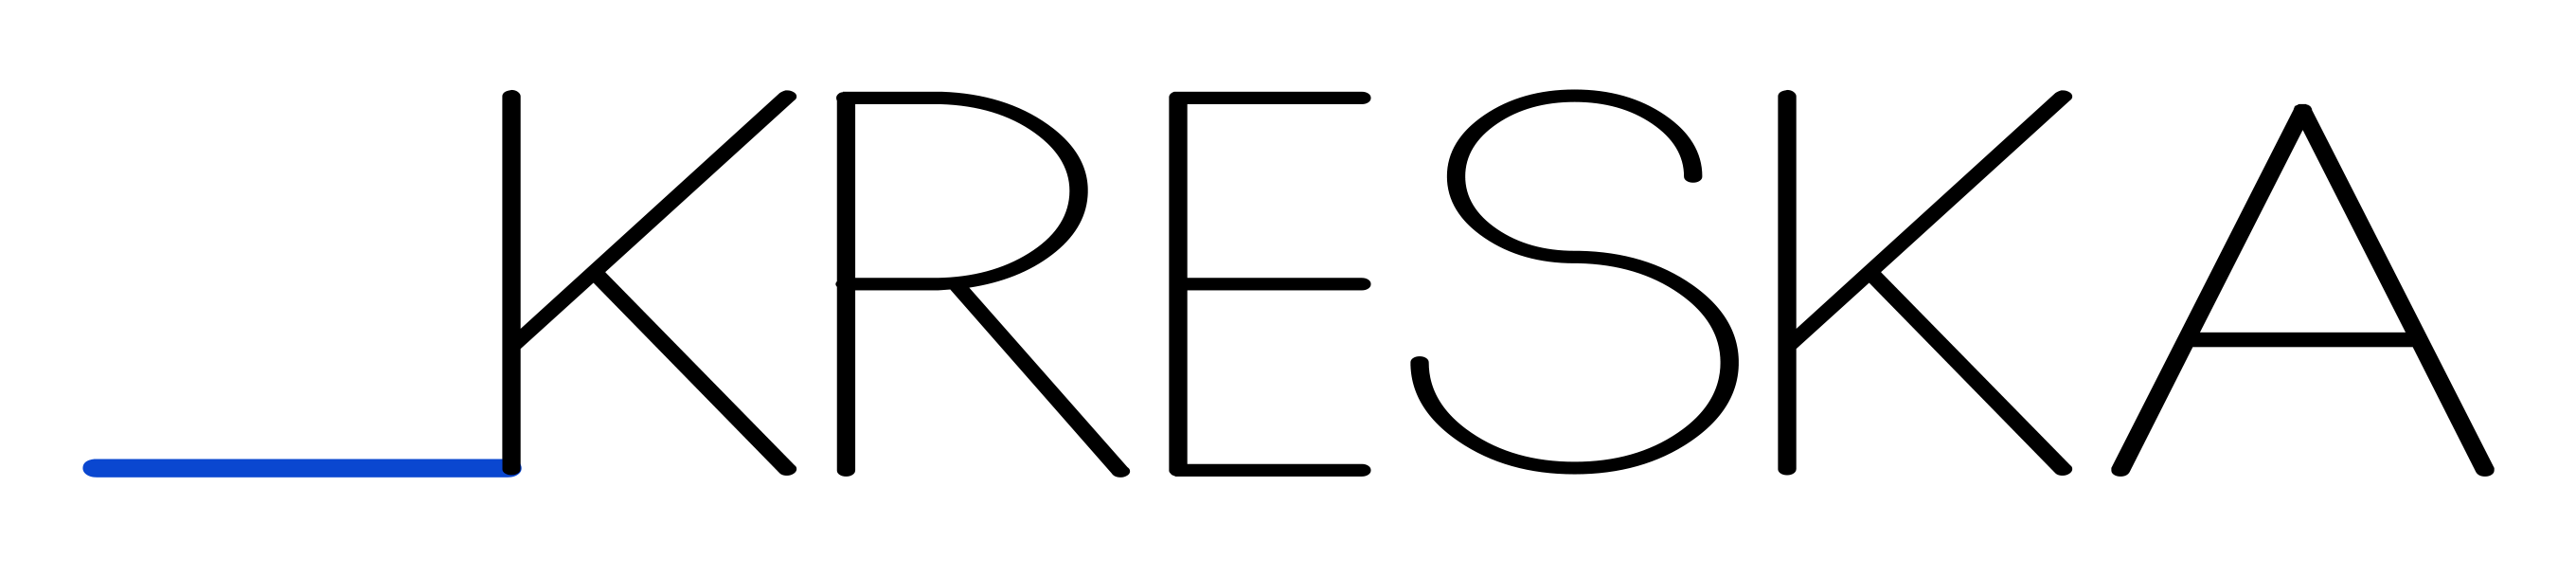 logo kreska2 0